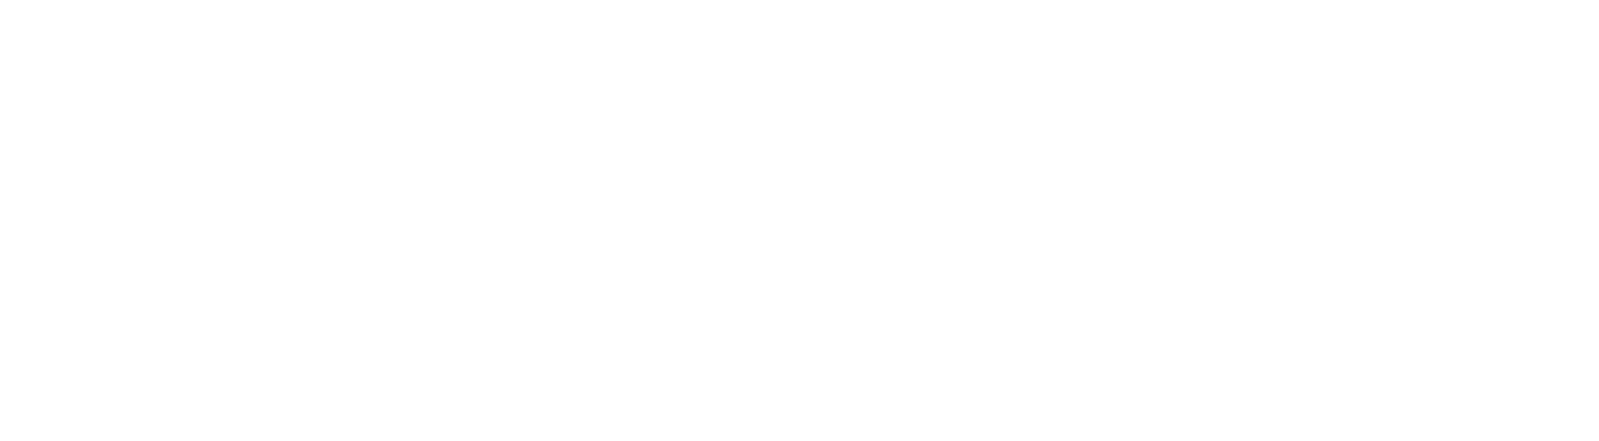 United Therapeutics logo grand pour les fonds sombres (PNG transparent)